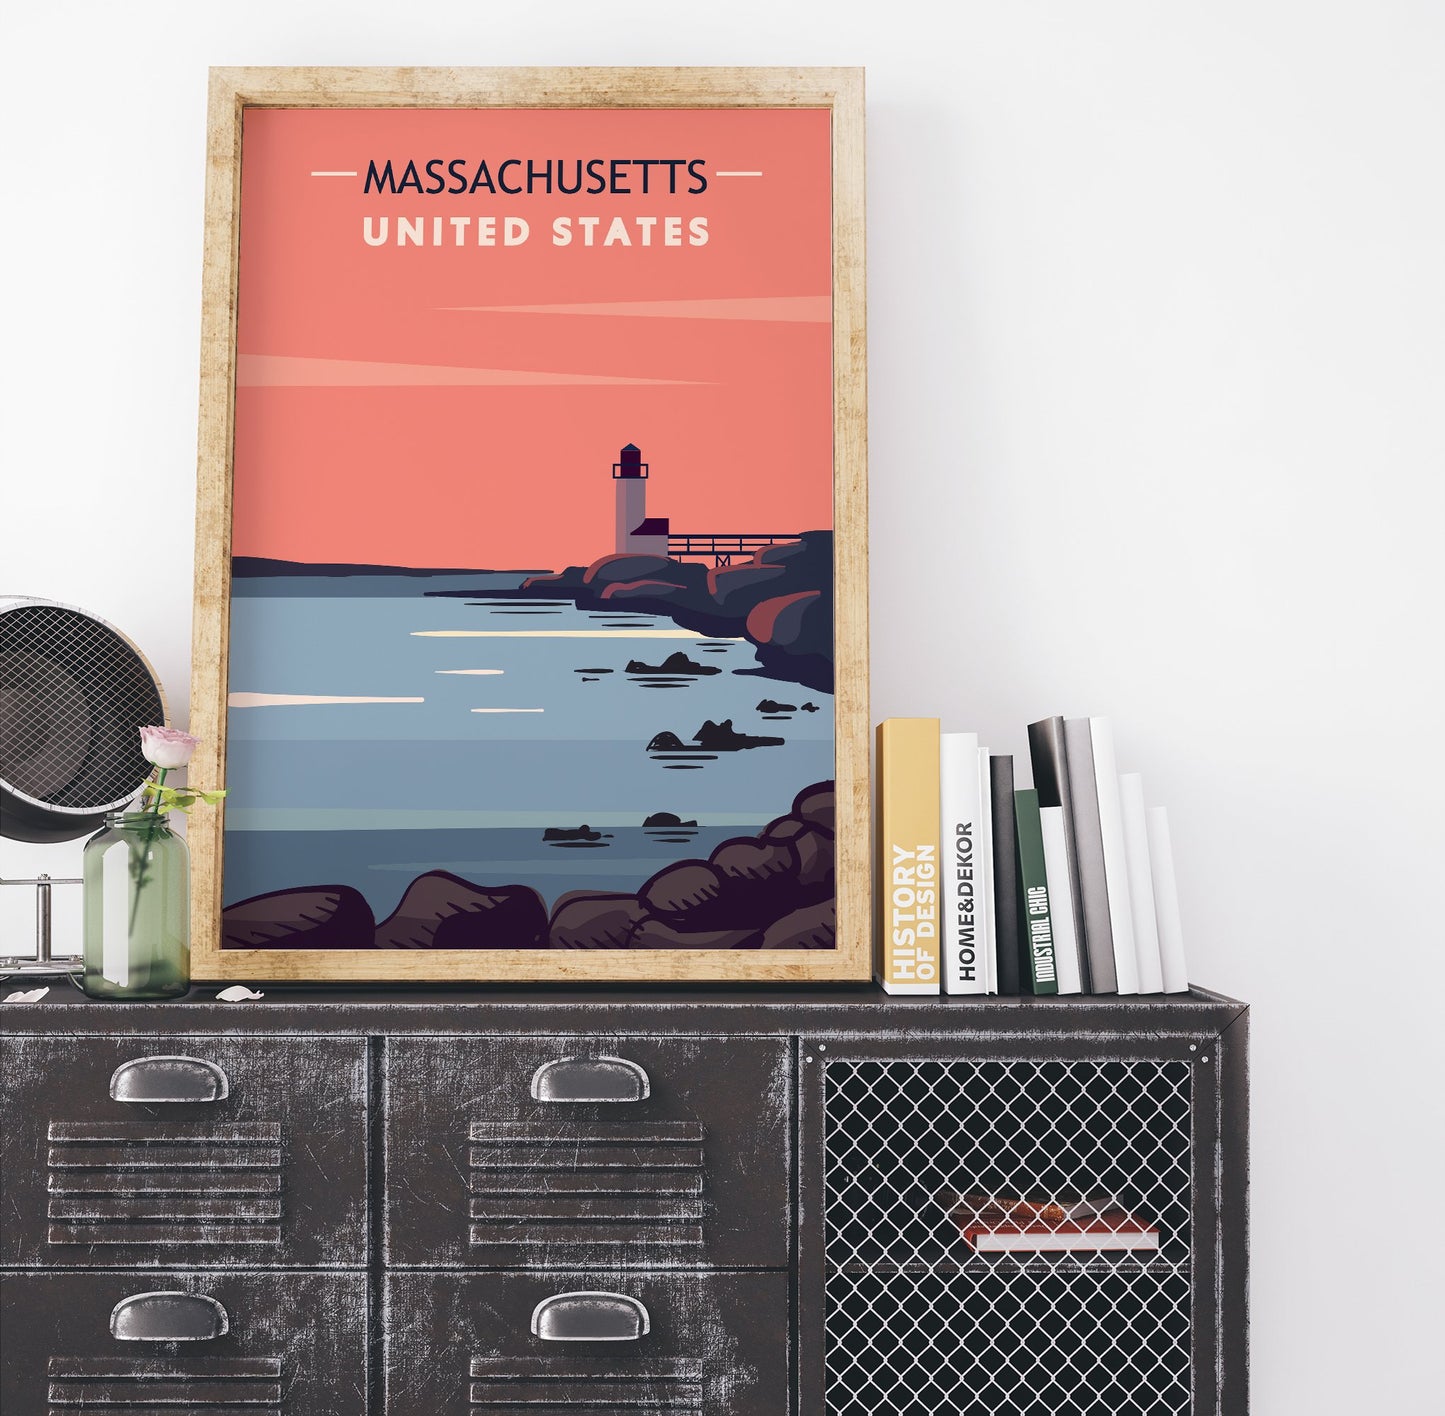 Massachusetts Travel Poster